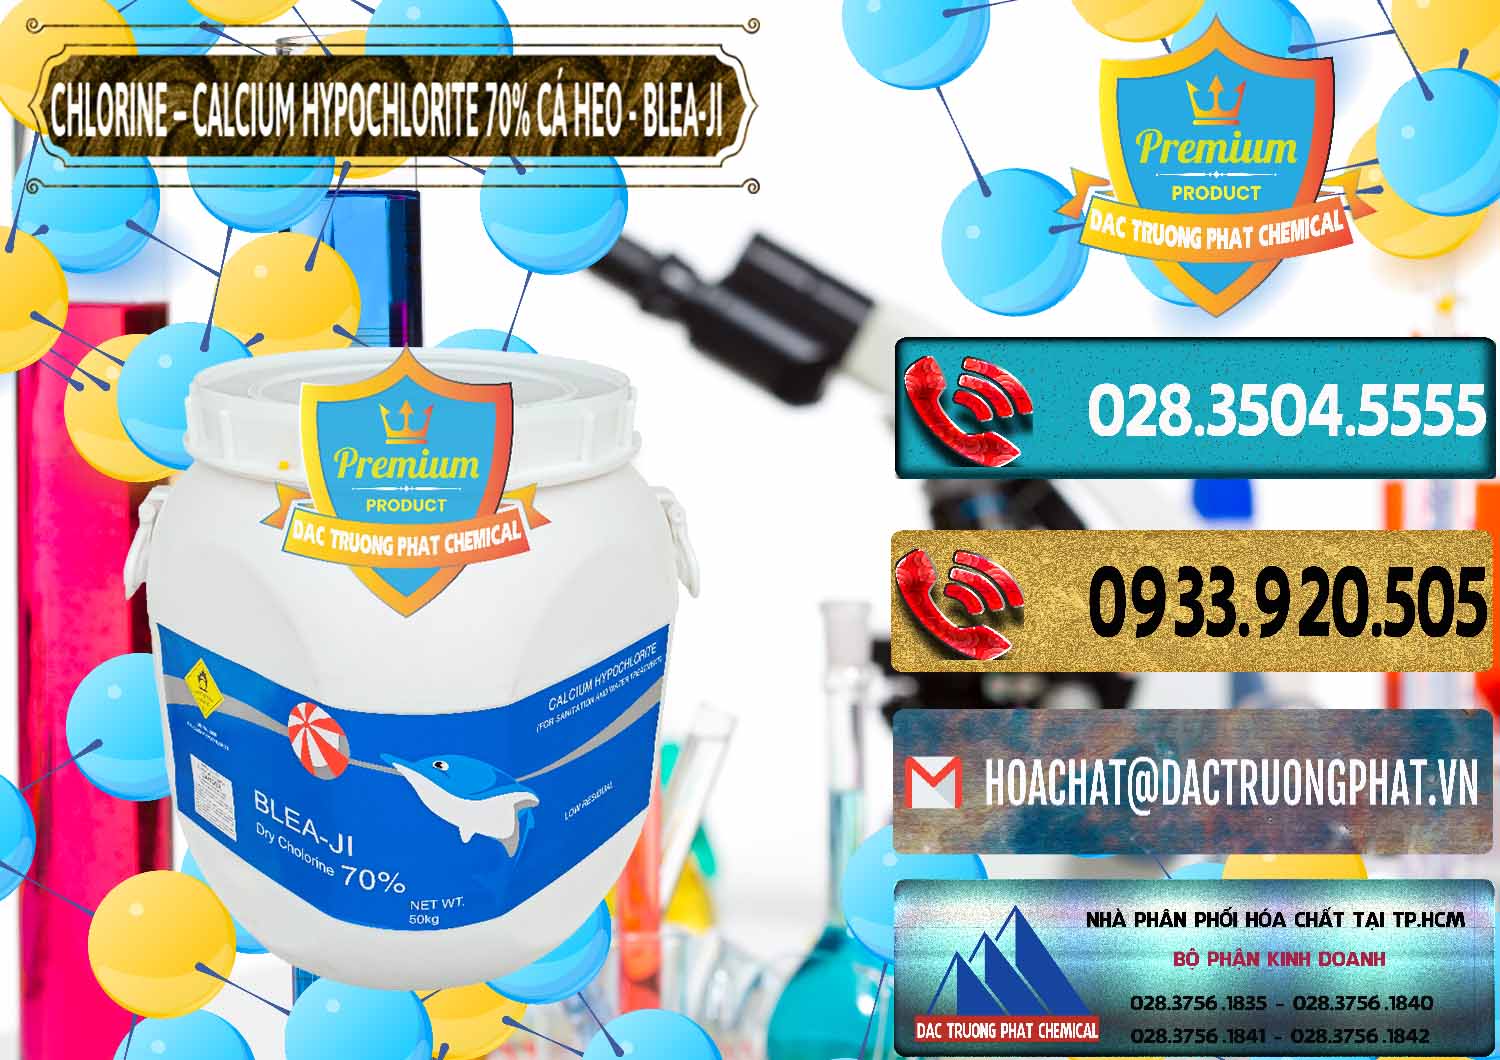 Chuyên kinh doanh - bán Clorin - Chlorine Cá Heo 70% Blea-Ji Trung Quốc China - 0056 - Cty chuyên cung cấp - bán hóa chất tại TP.HCM - hoachatdetnhuom.com